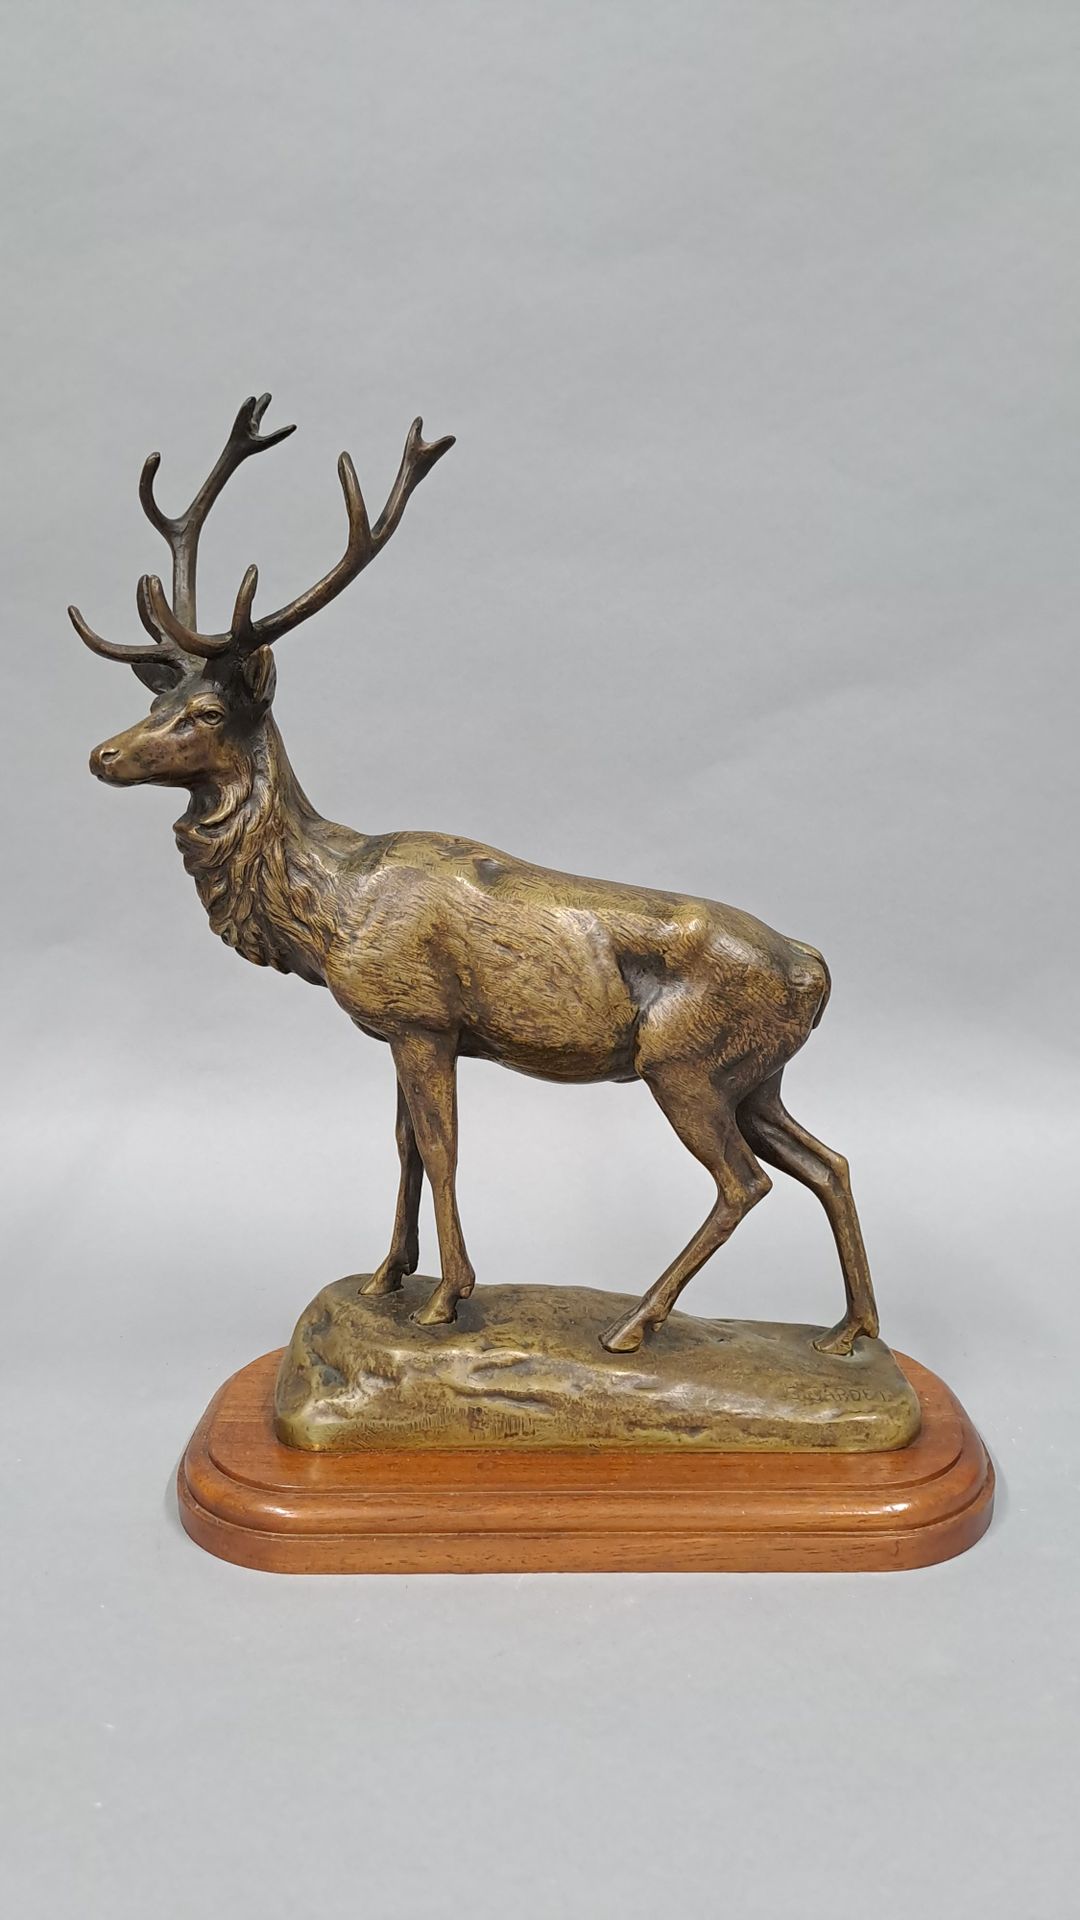 Null 加尔德-乔治 (1863-1939)

雄鹿，青铜，右下角有签名的露台。在一个木质底座上。

高度：32.50厘米。